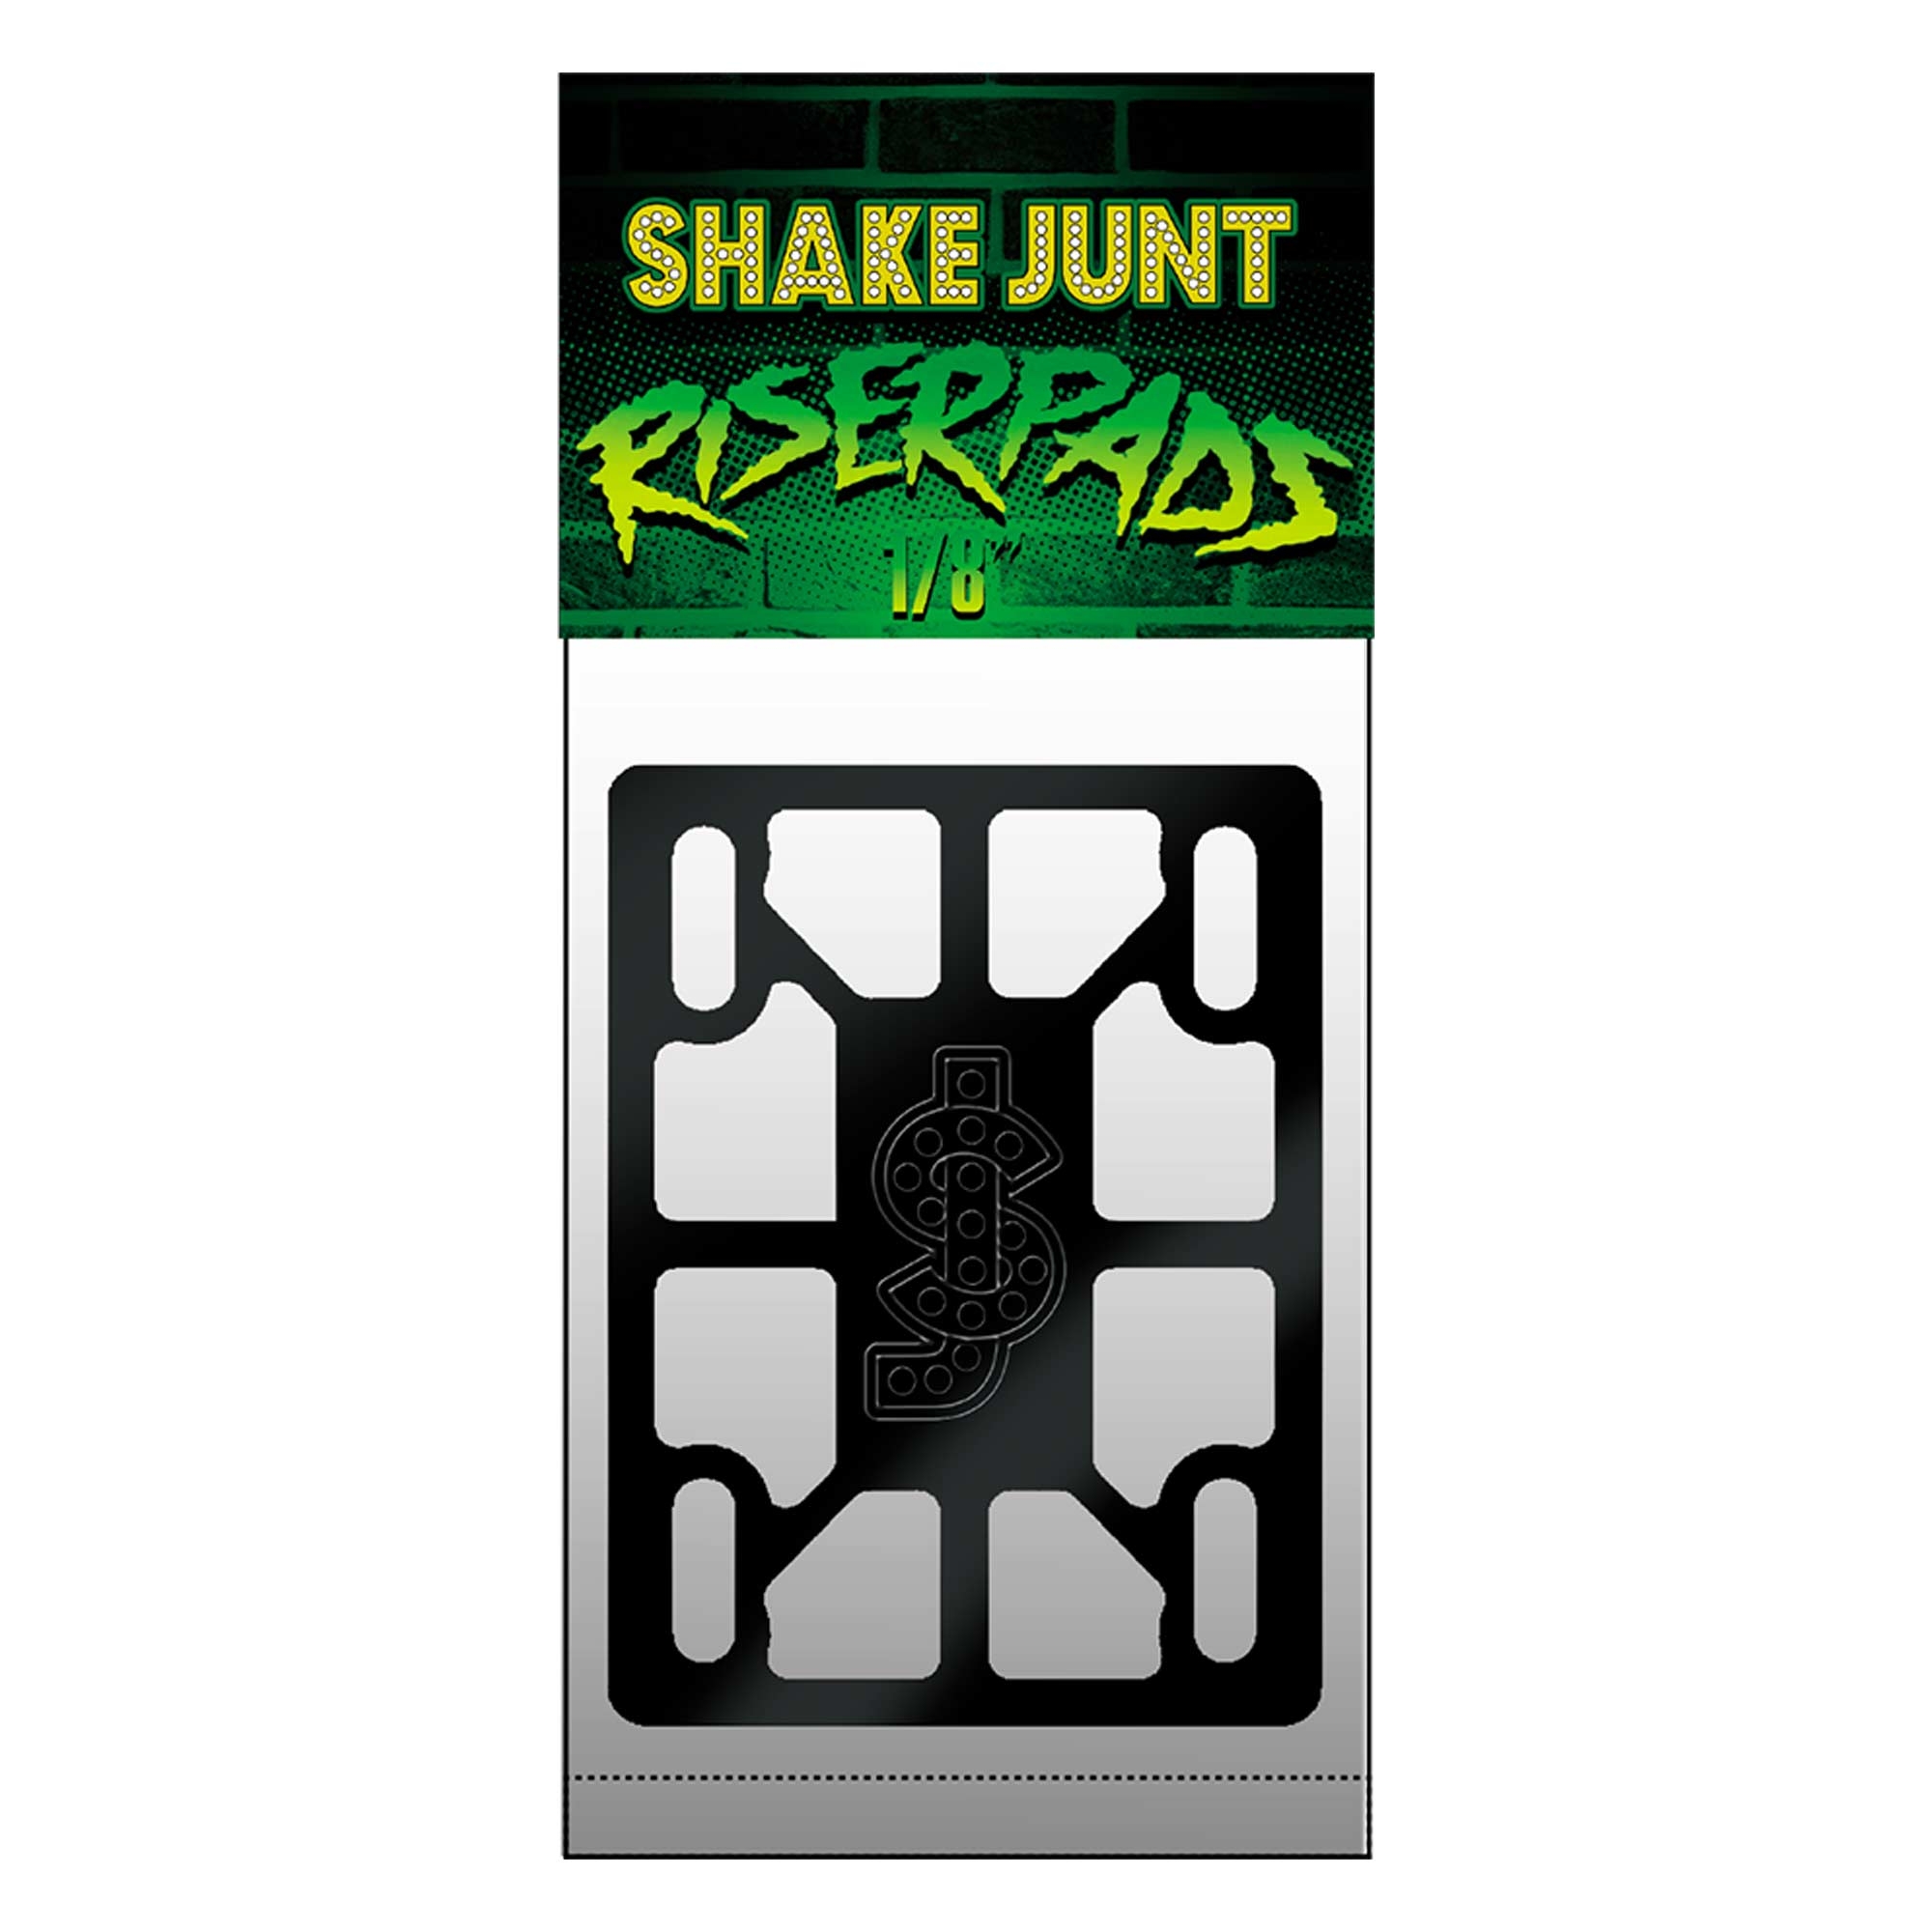 "SHAKE JUNT RISER PADS 1/8" -"